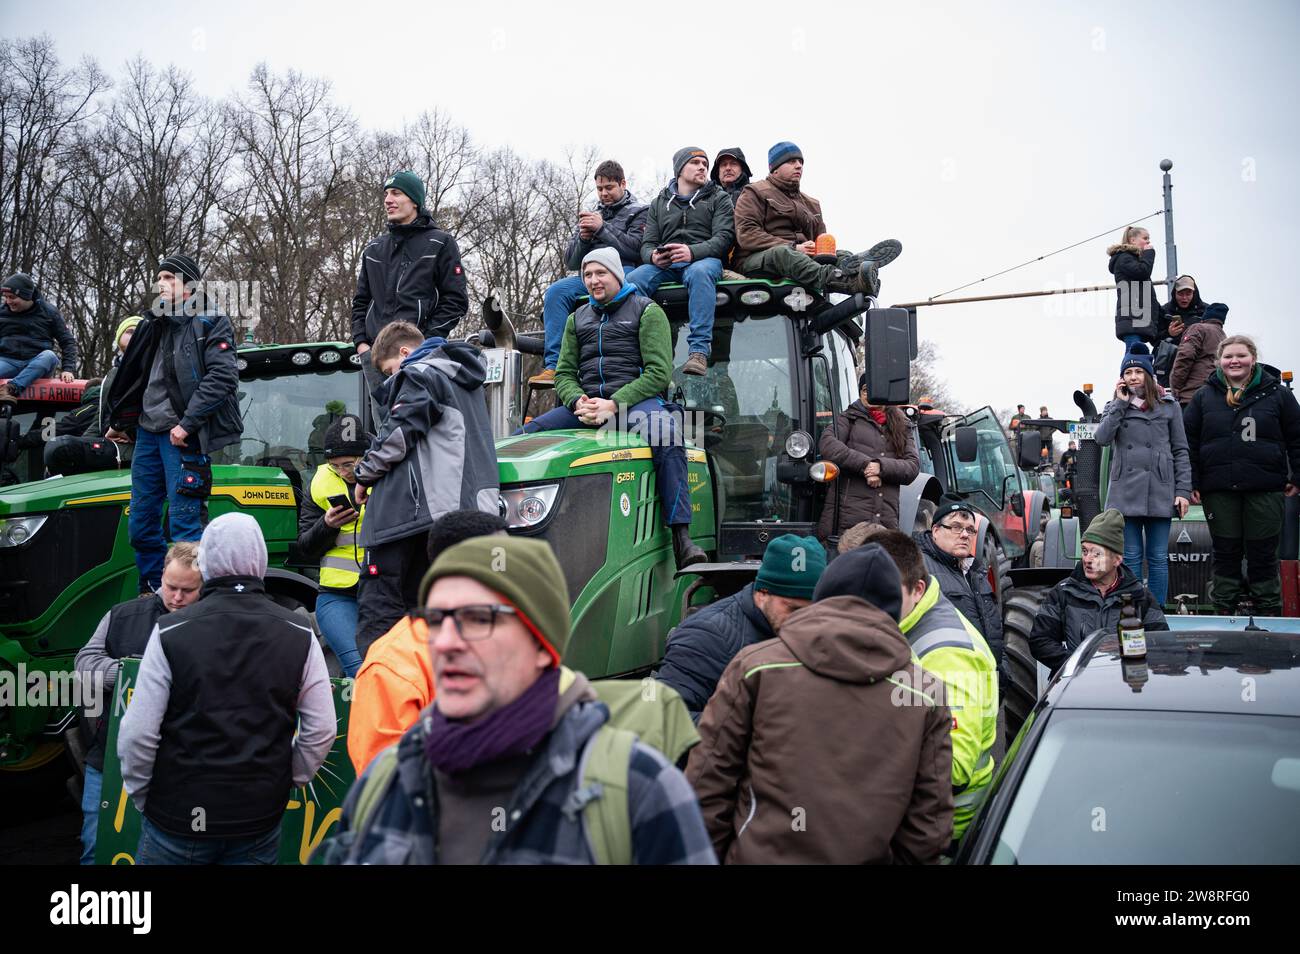 18.12.2023, Berlin, Deutschland, Europa - Tausende Bauern demonstrieren mit ihren Traktoren vor dem Brandenburger Tor gegen die Sparpolitik. Stockfoto